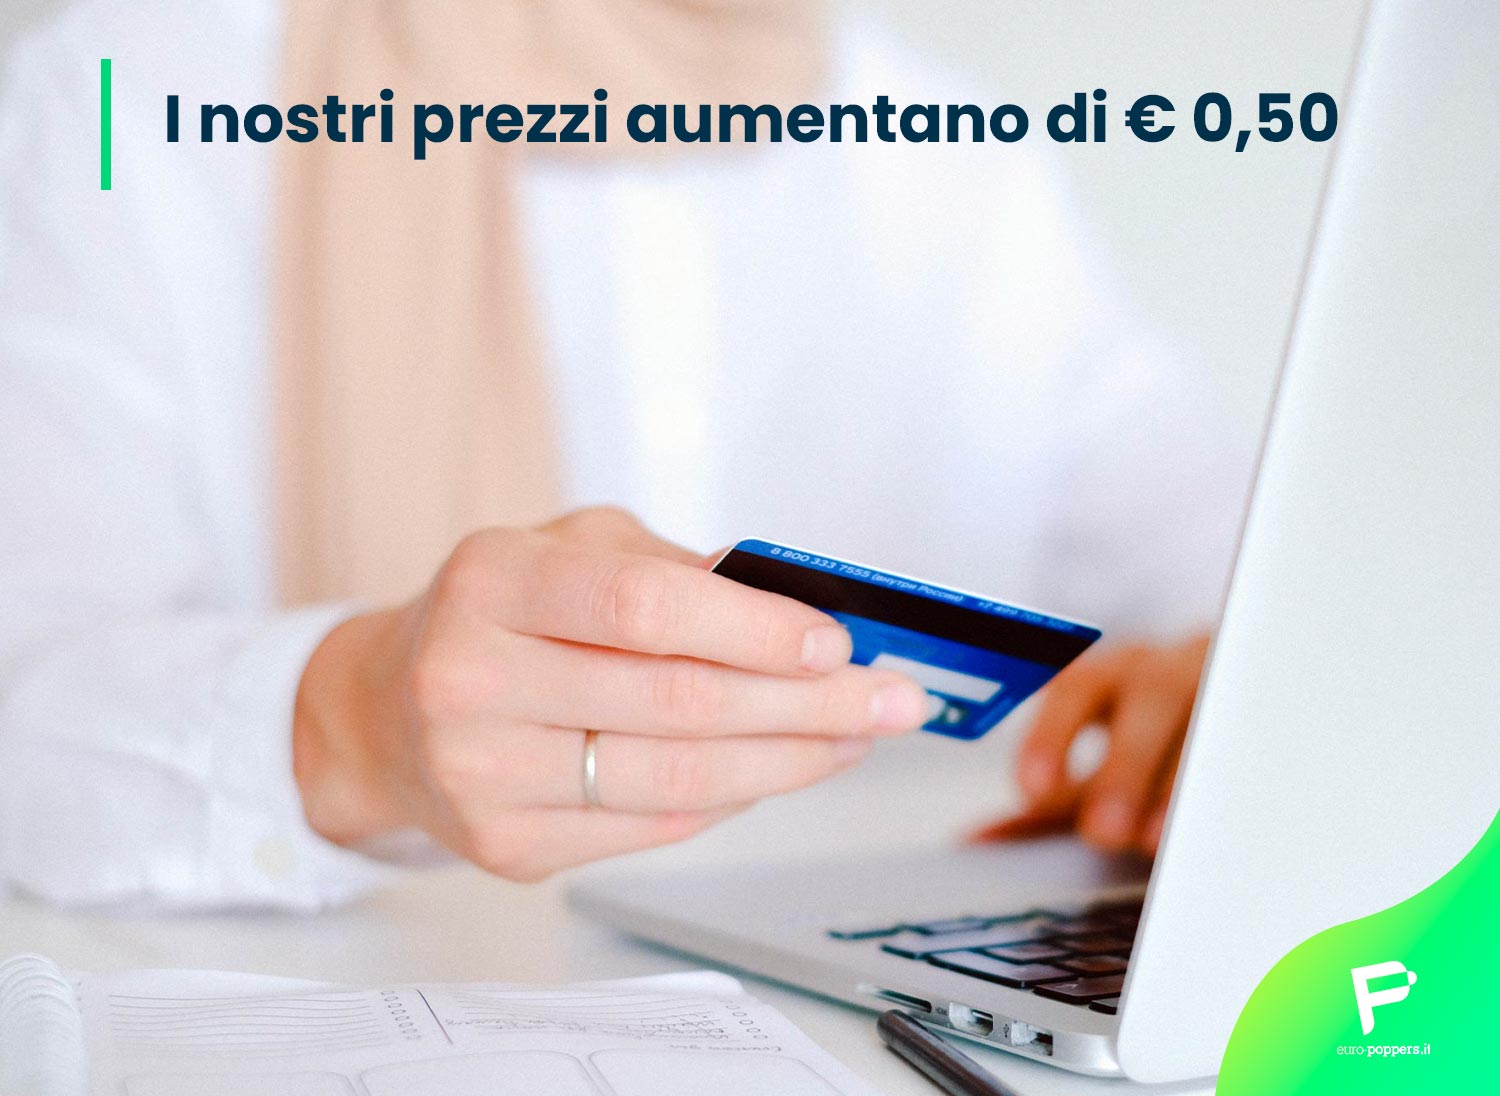 Al momento stai visualizzando Euro Poppers Italia: I nostri prezzi aumentano di € 0,50.